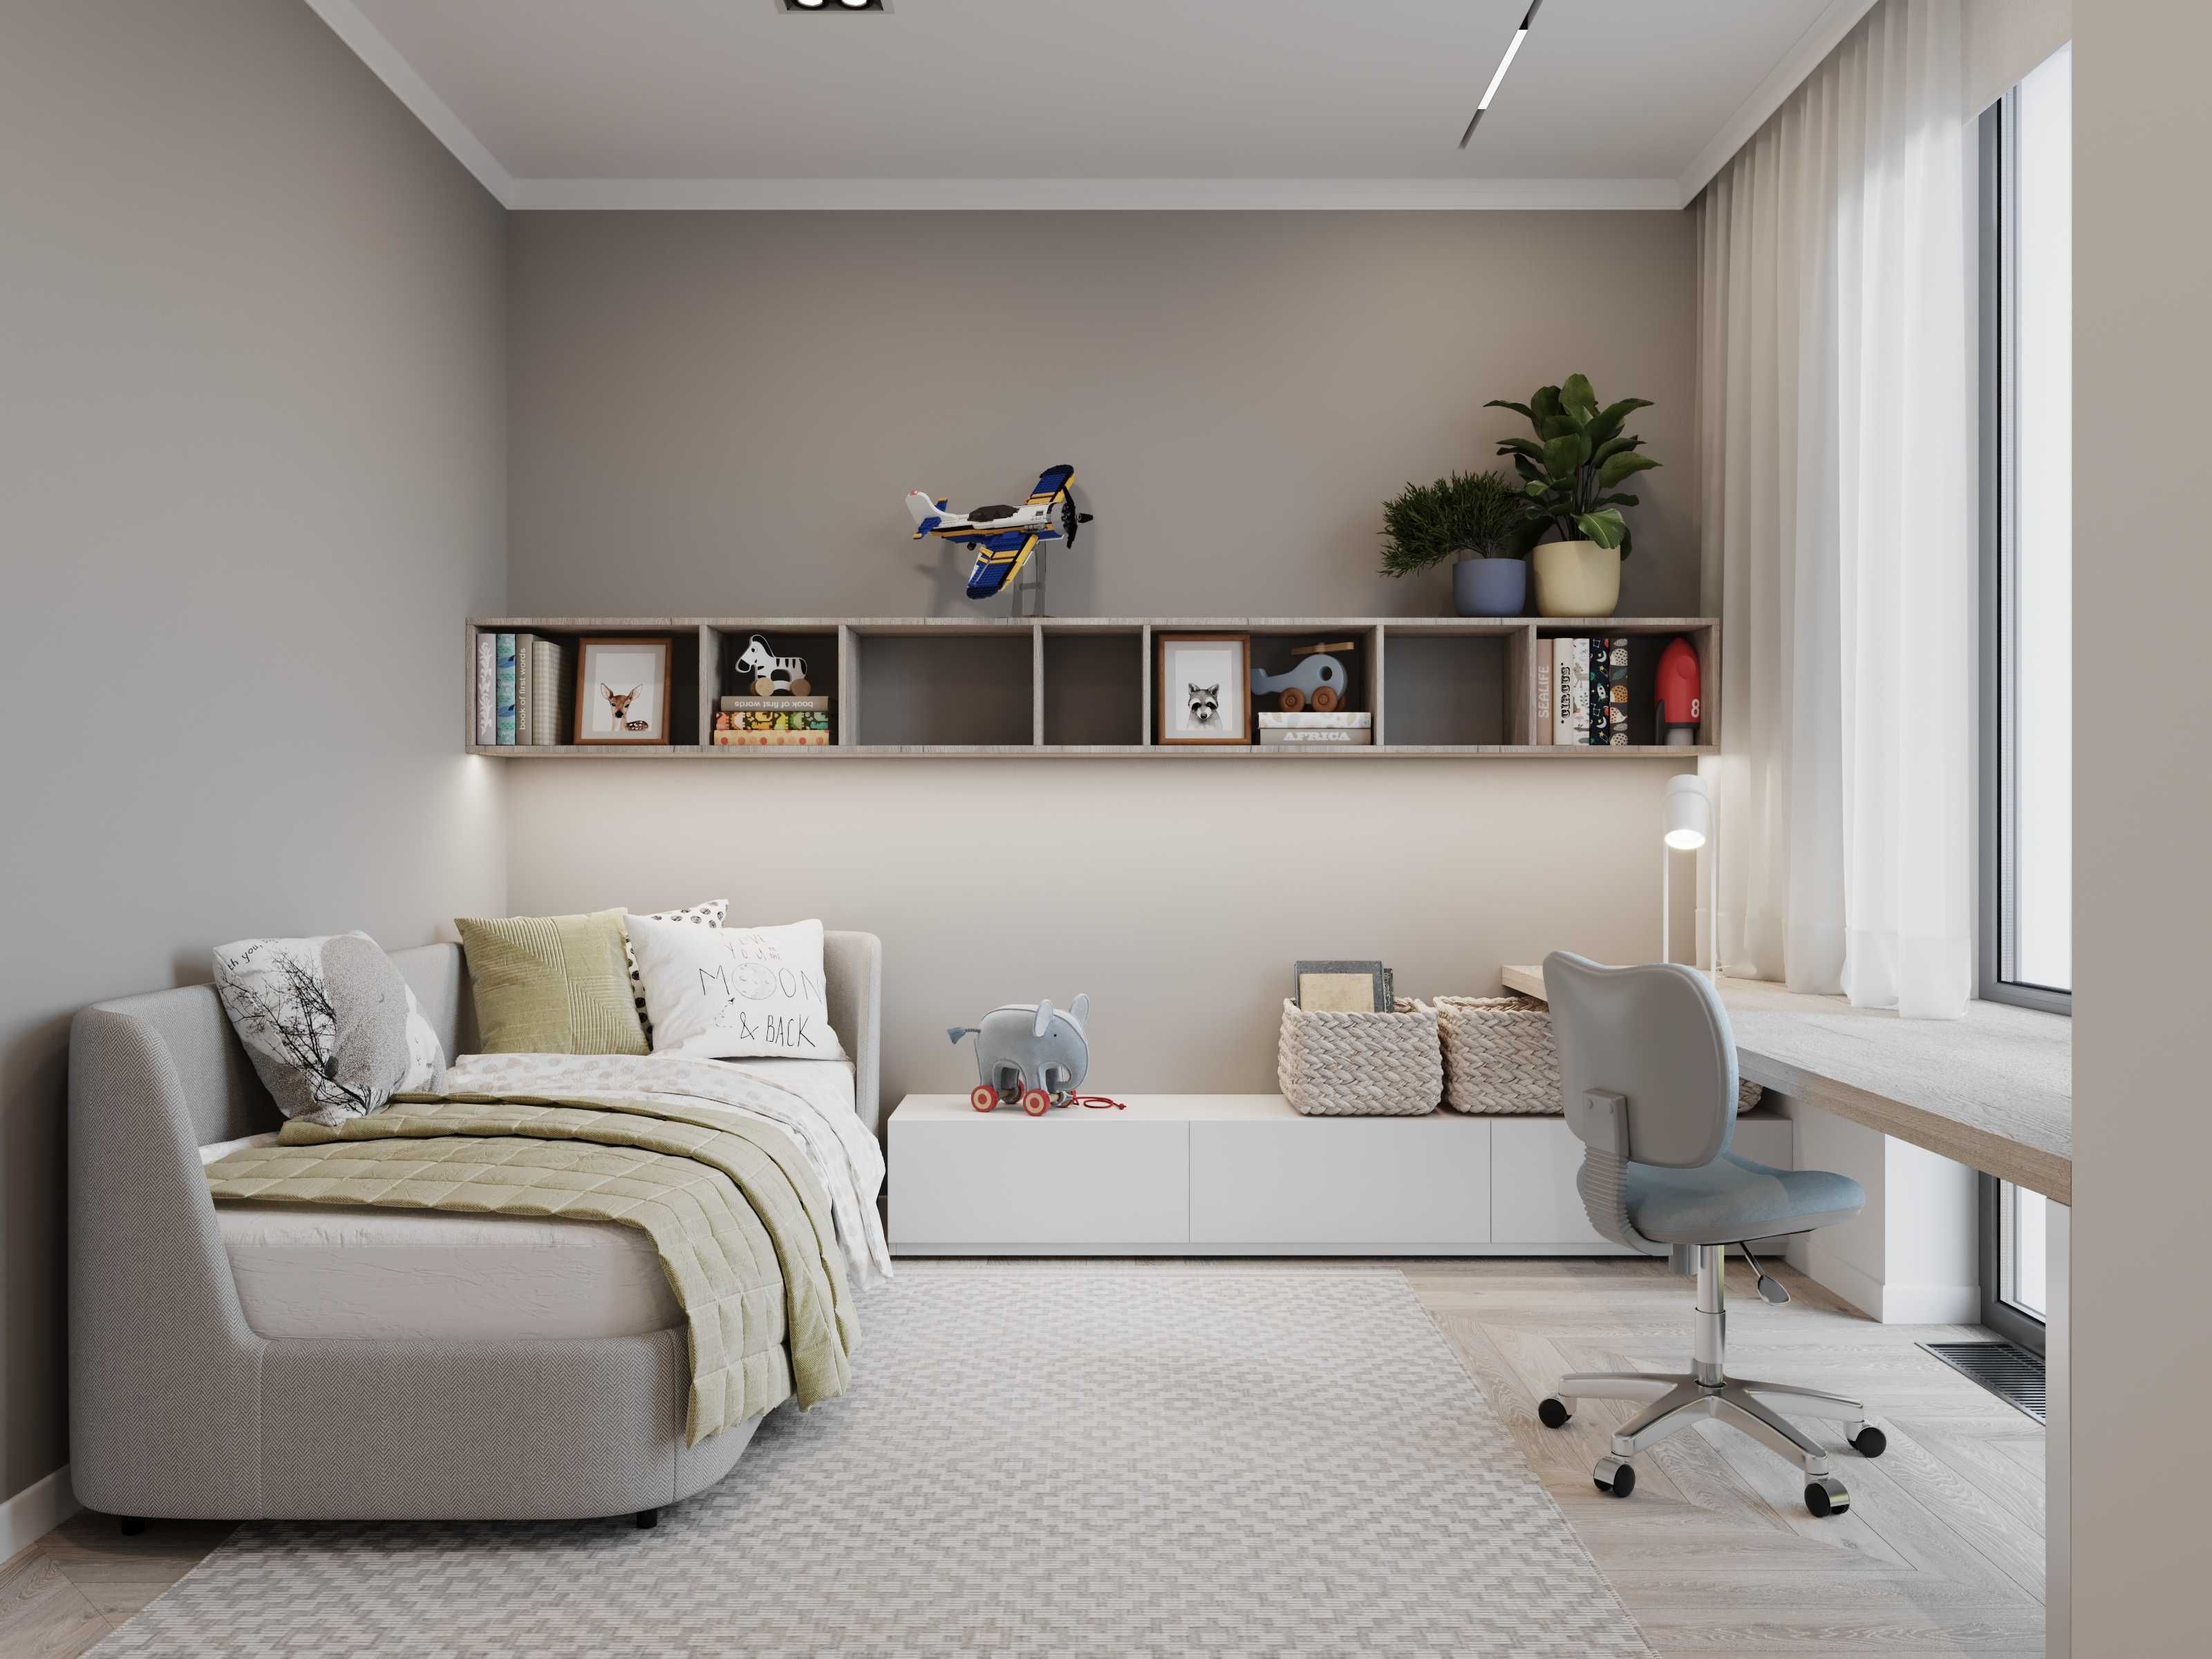 Дизайн интерьера / Дизайнер квартиры дома офиса / 3D Визуализация